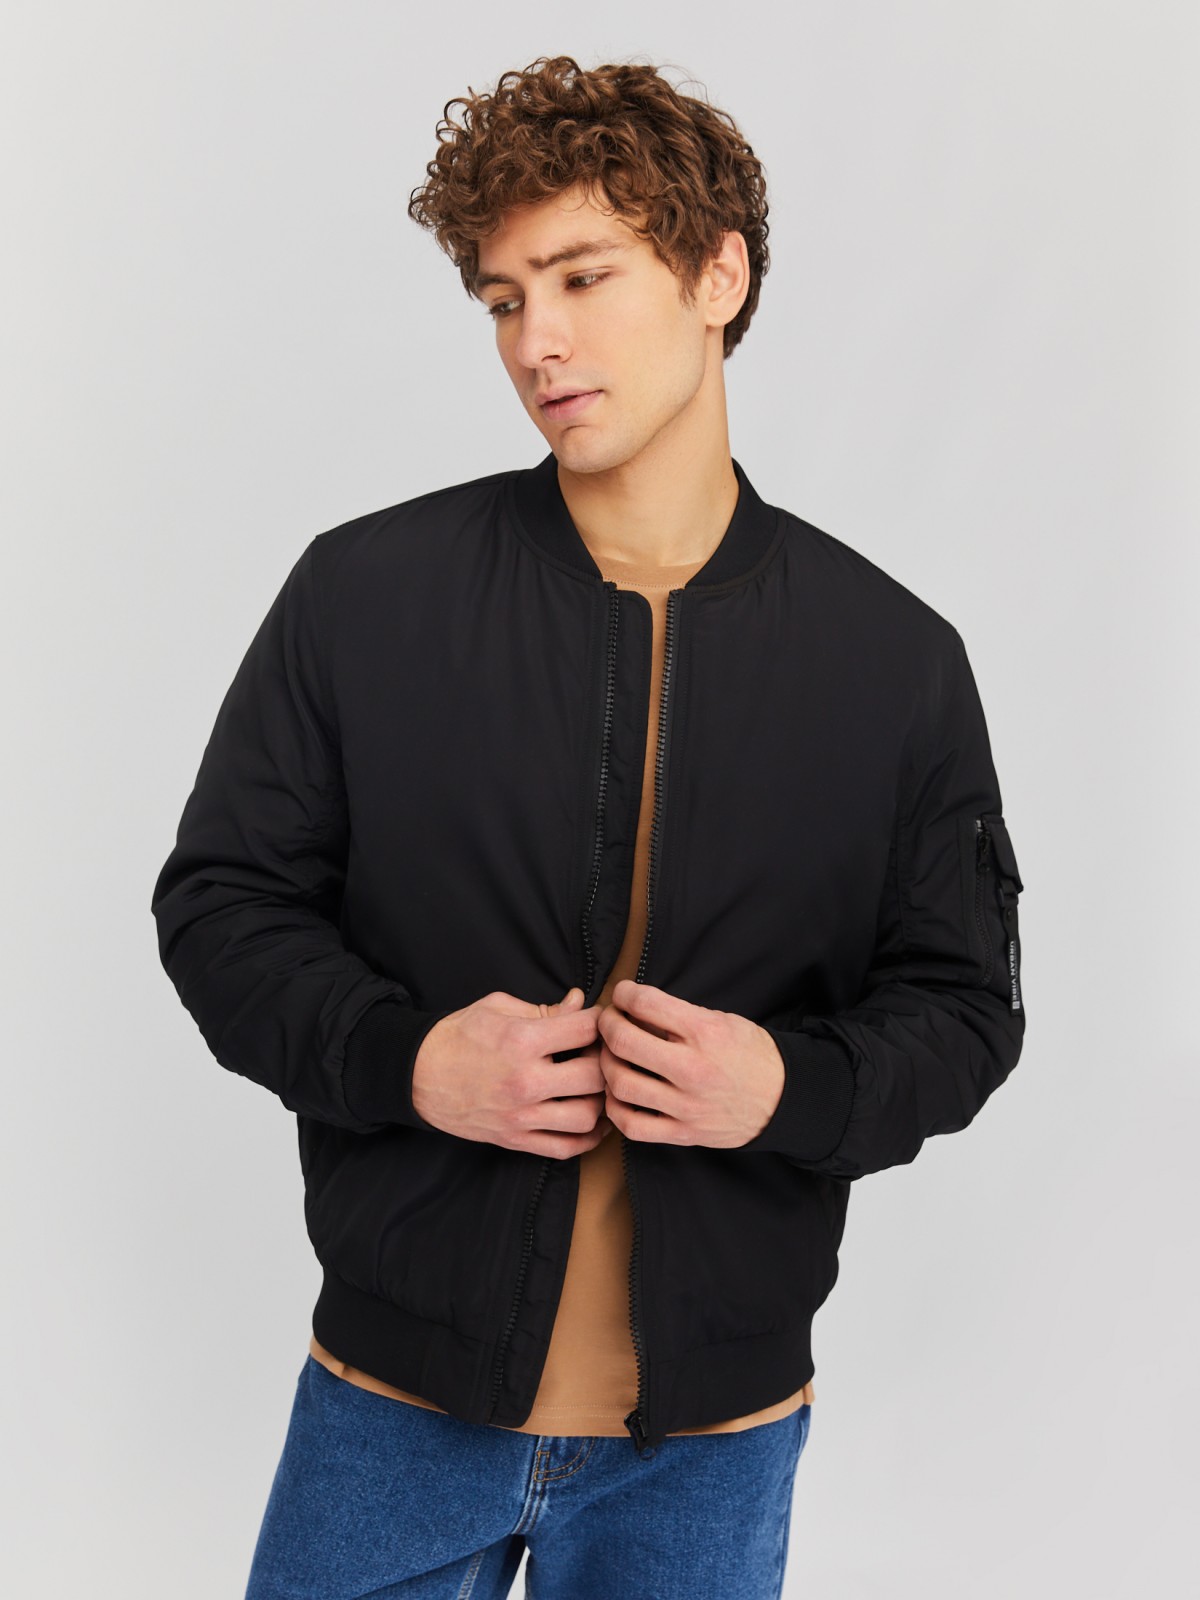 Утеплённая куртка-бомбер с воротником-стойкой zolla 014135102014, цвет черный, размер M